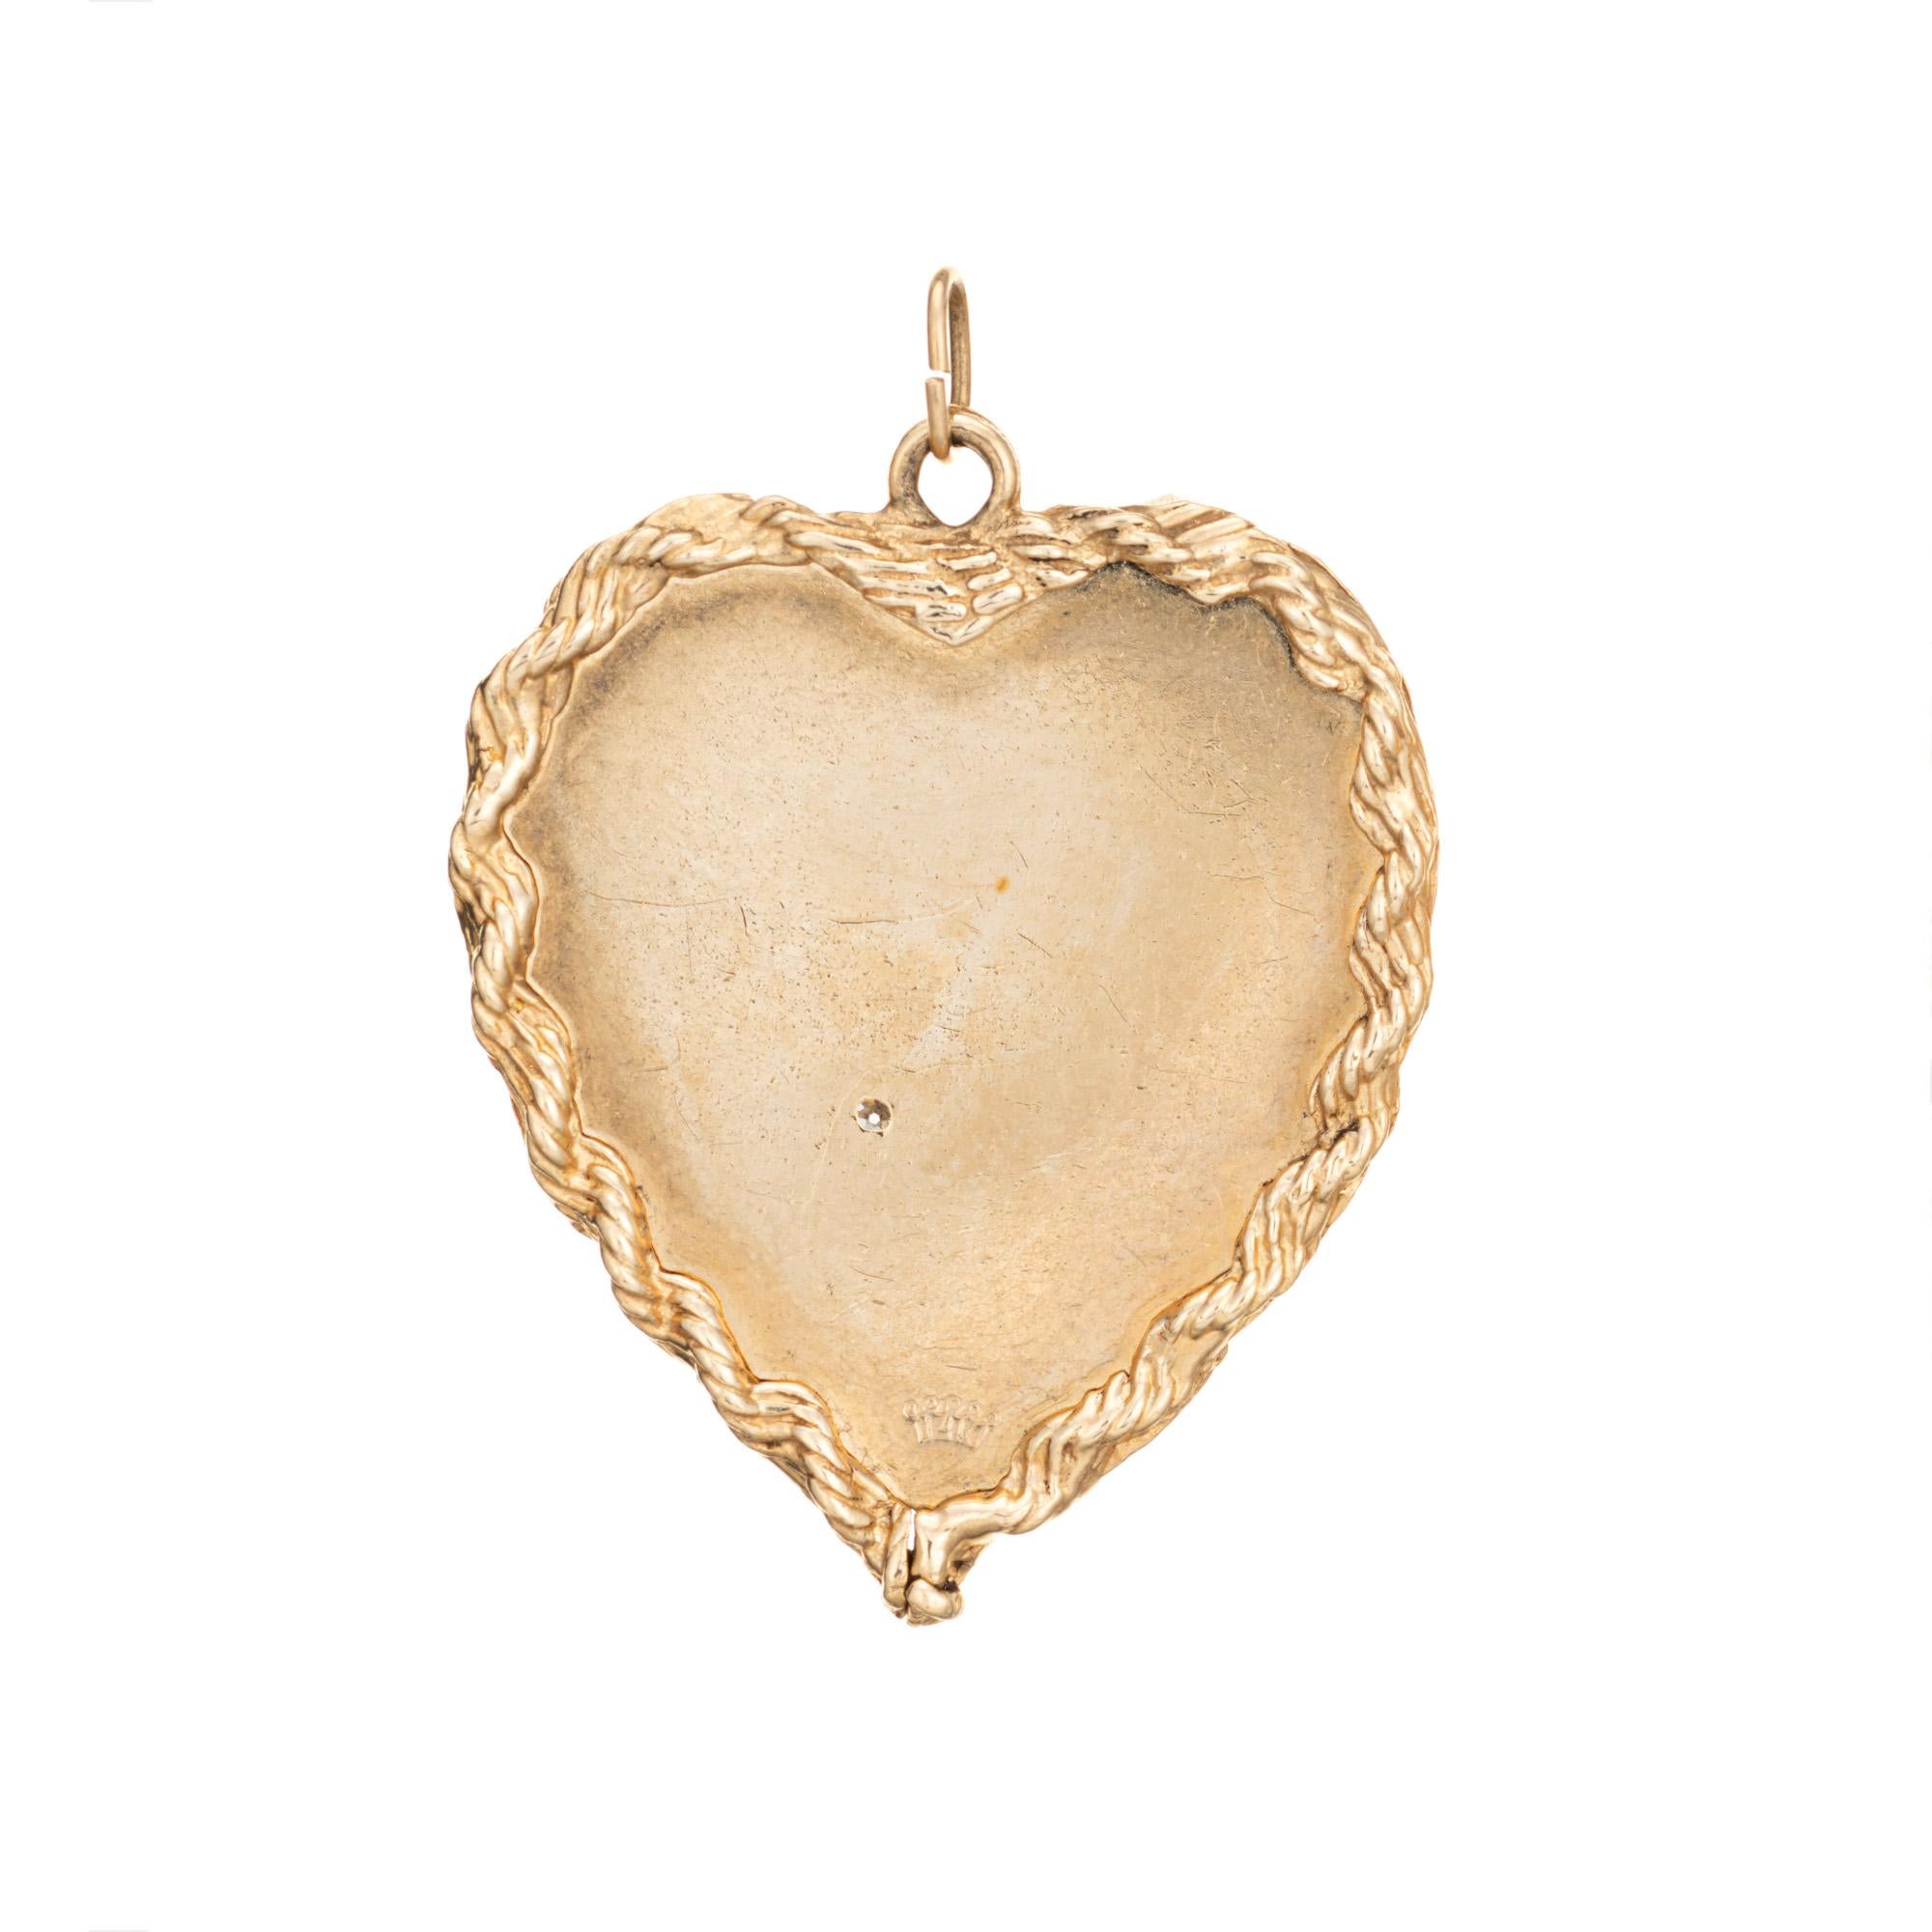 Breloque vintage en or jaune 14k (circa 1966) avec un grand cœur finement détaillé.  

Un diamant estimé à 0,01 carat est serti dans le charme (couleur estimée H-I et pureté SI1).

Si vous êtes né le 30 juin 1966, vous avez de la chance ! Le grand